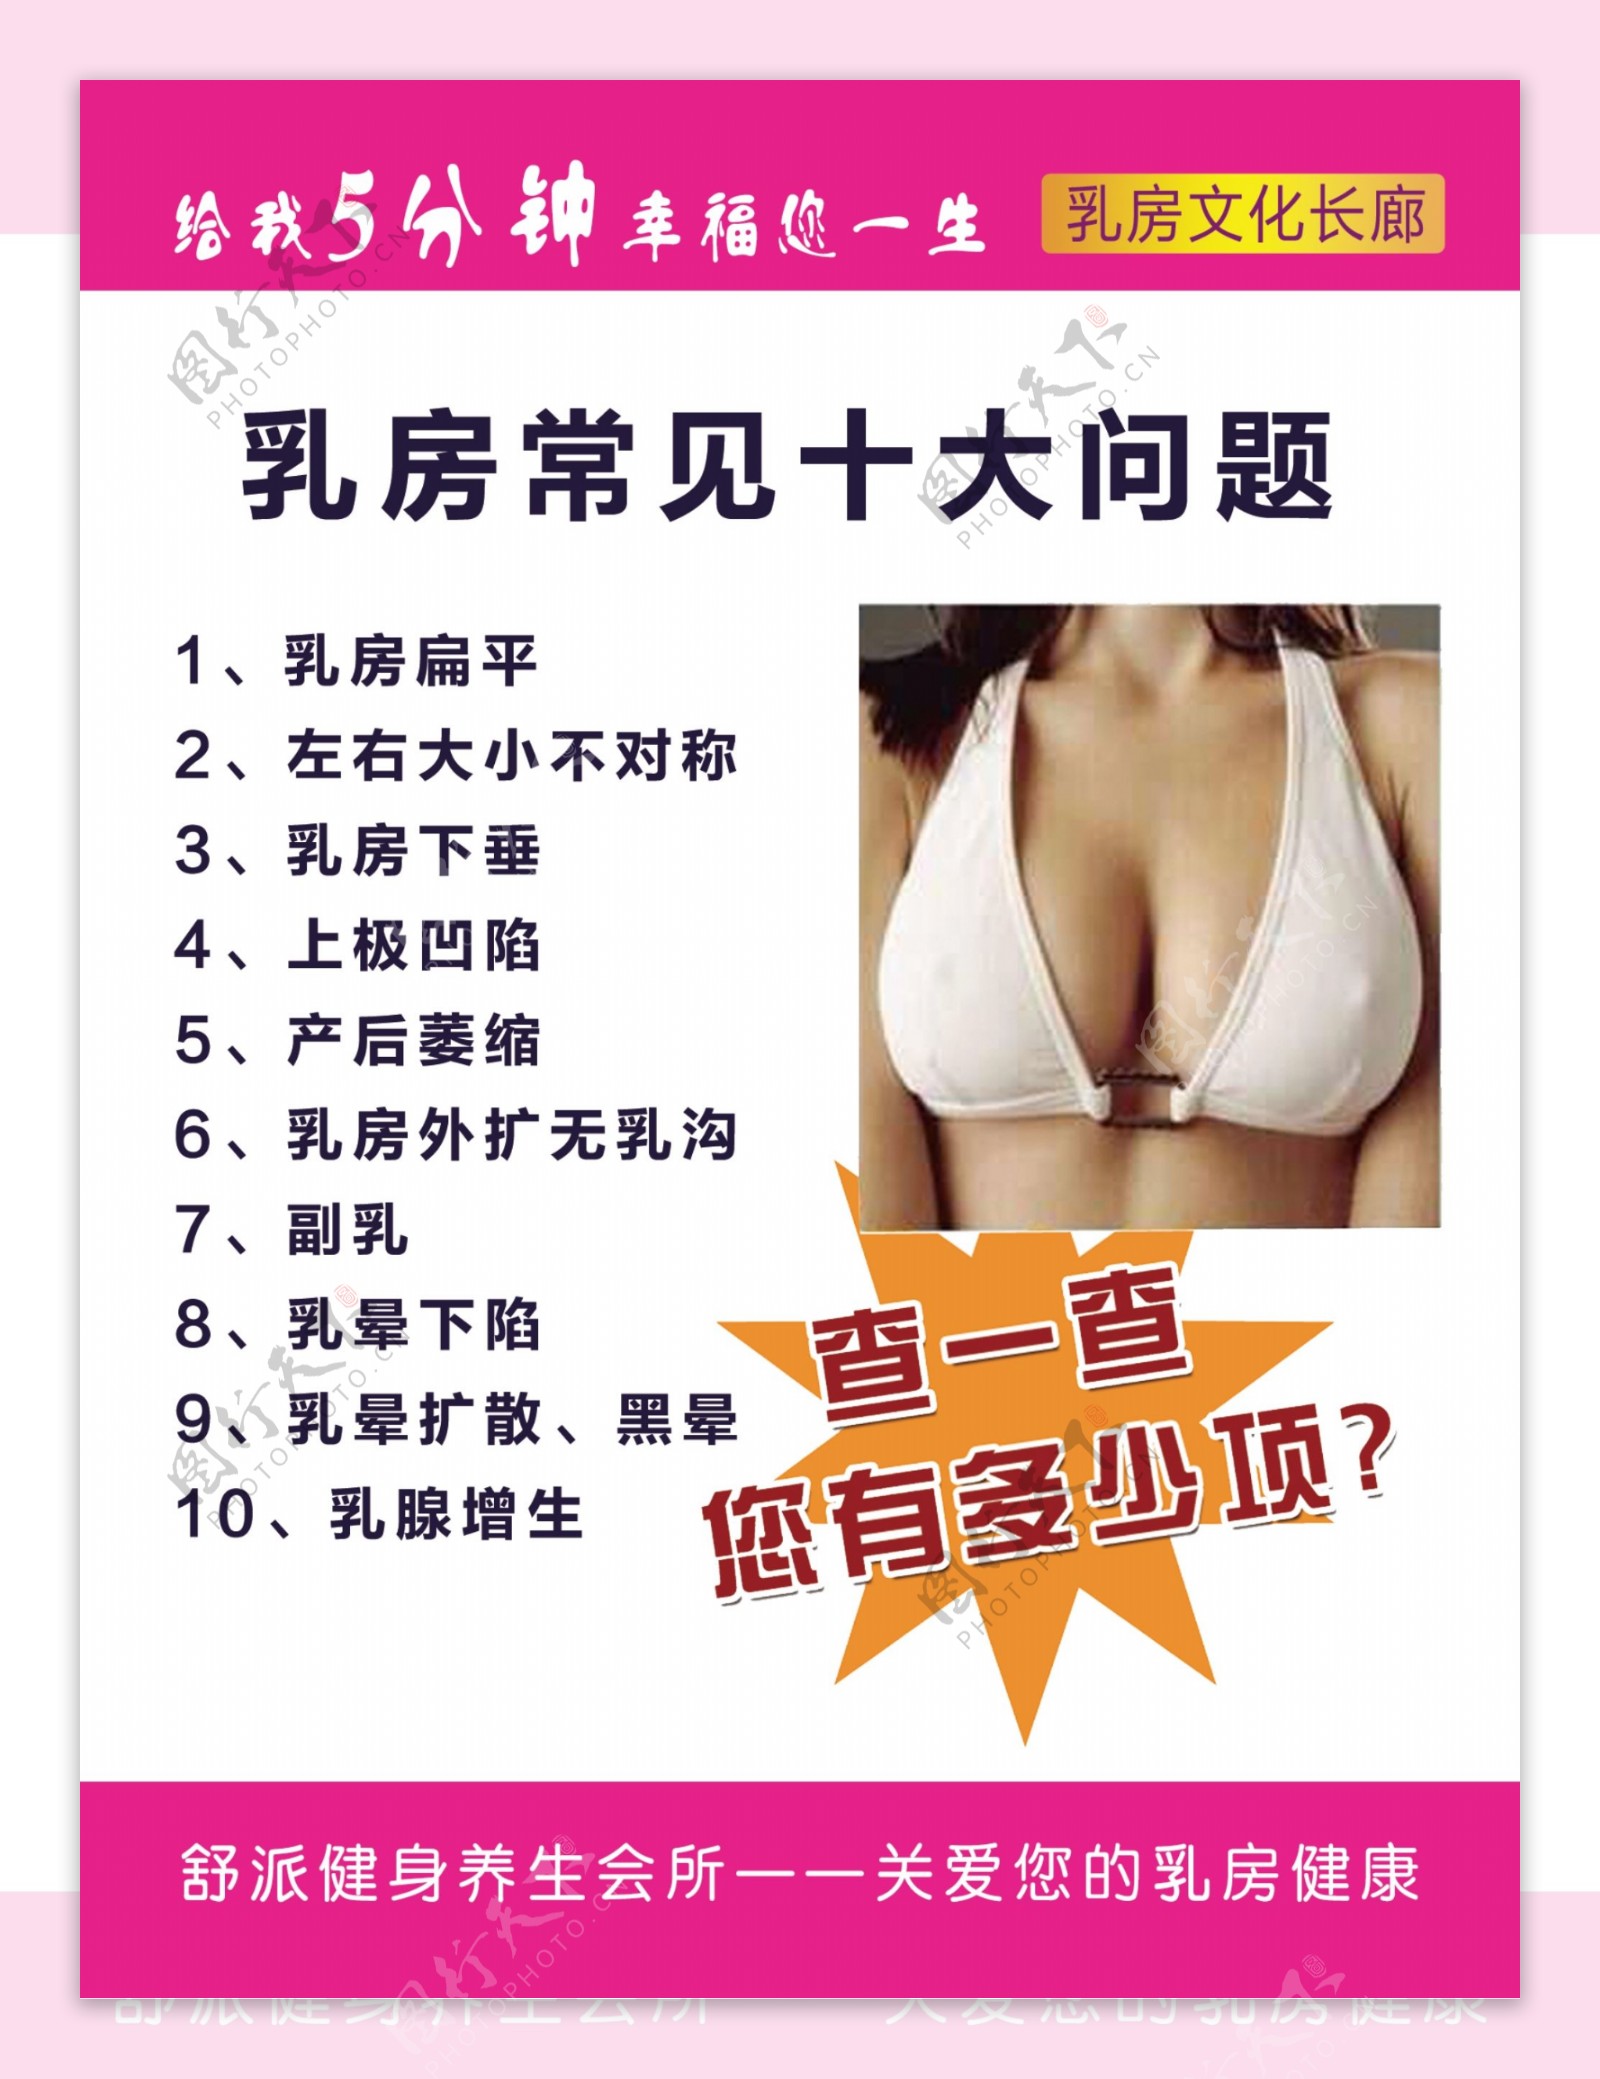 乳房常见十大问题